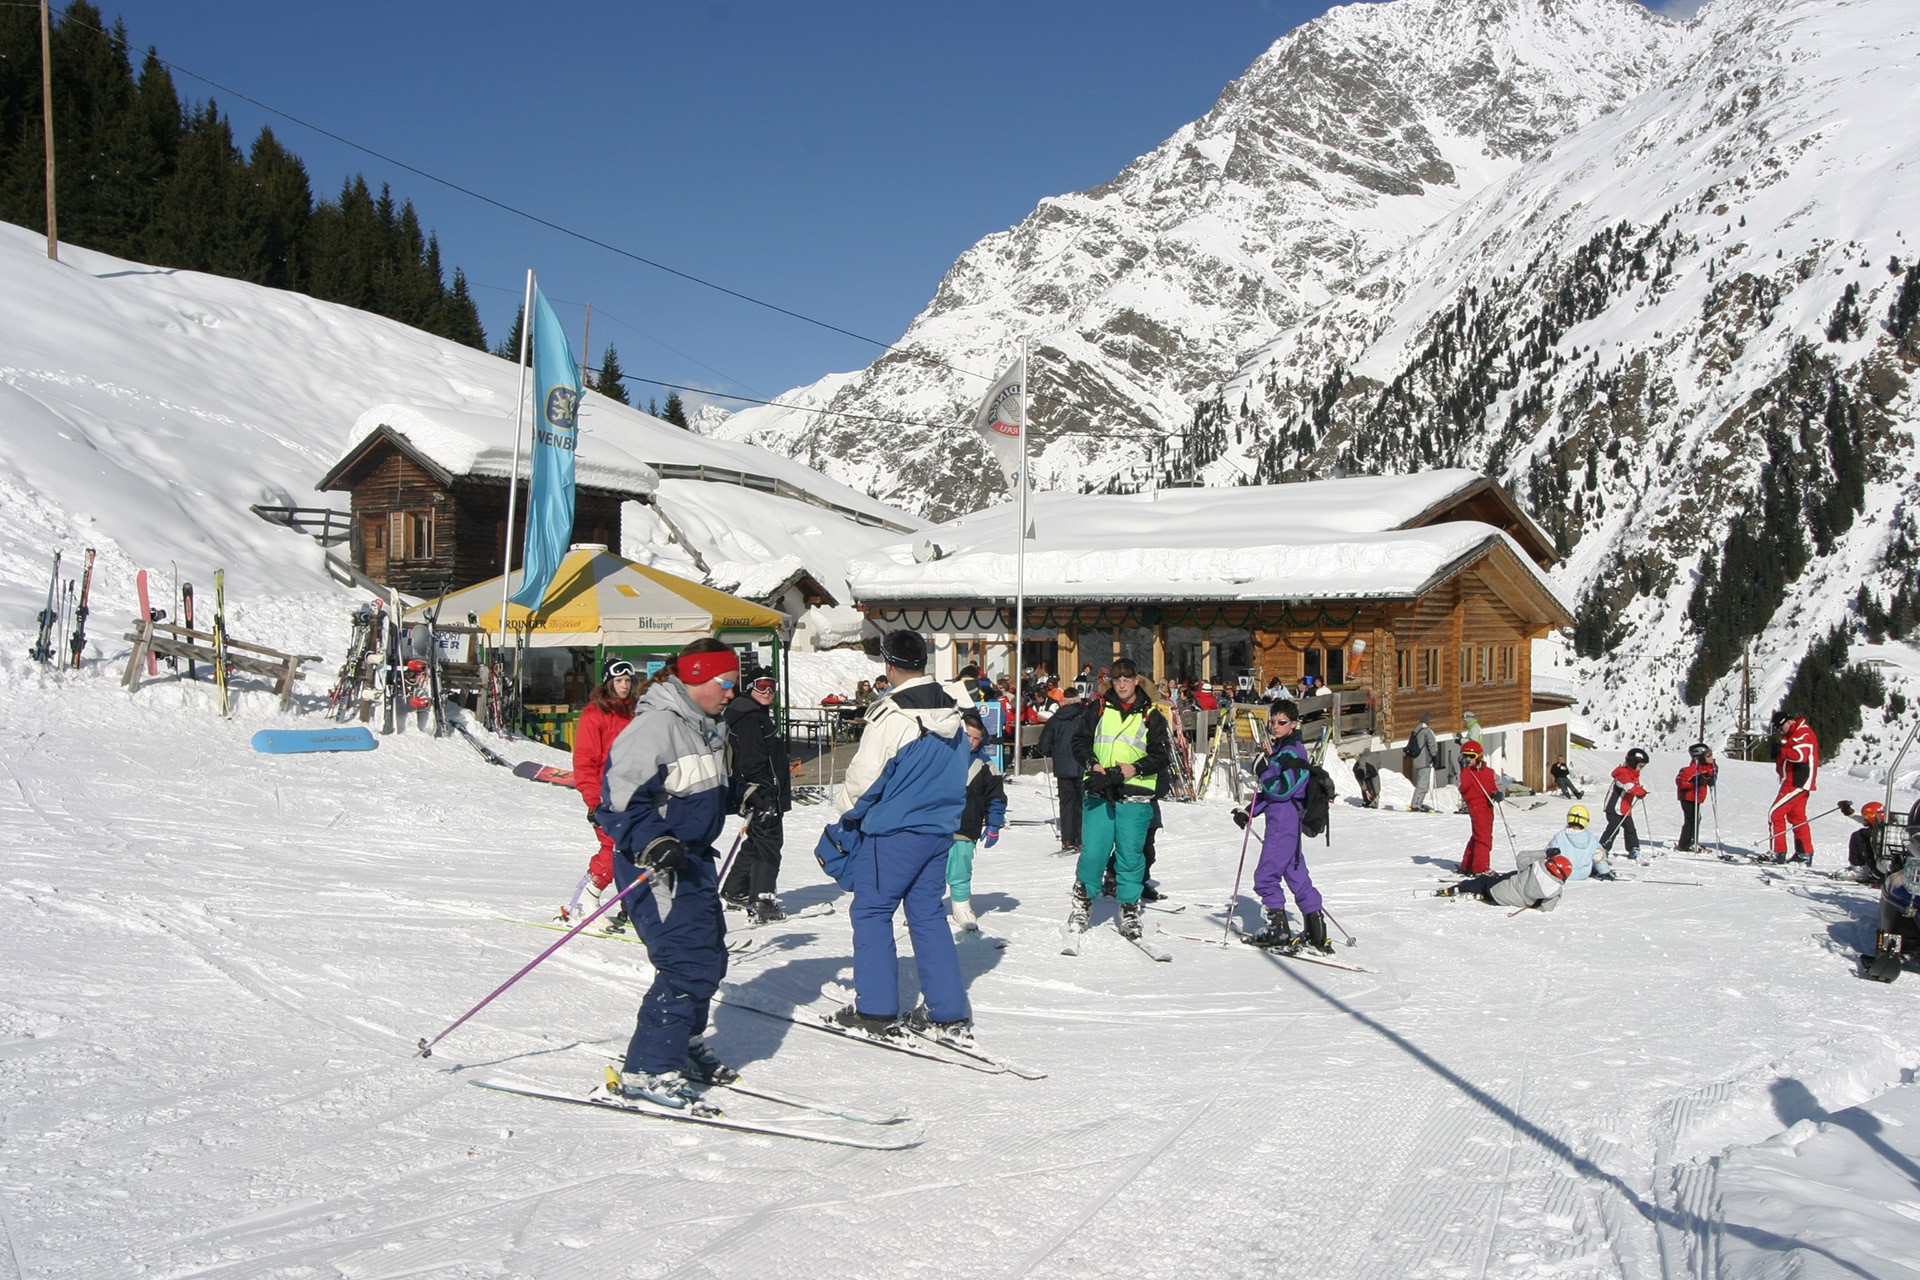 Pitztaler Skihütte amidst the Rifflsee Ski Area in Pitztal